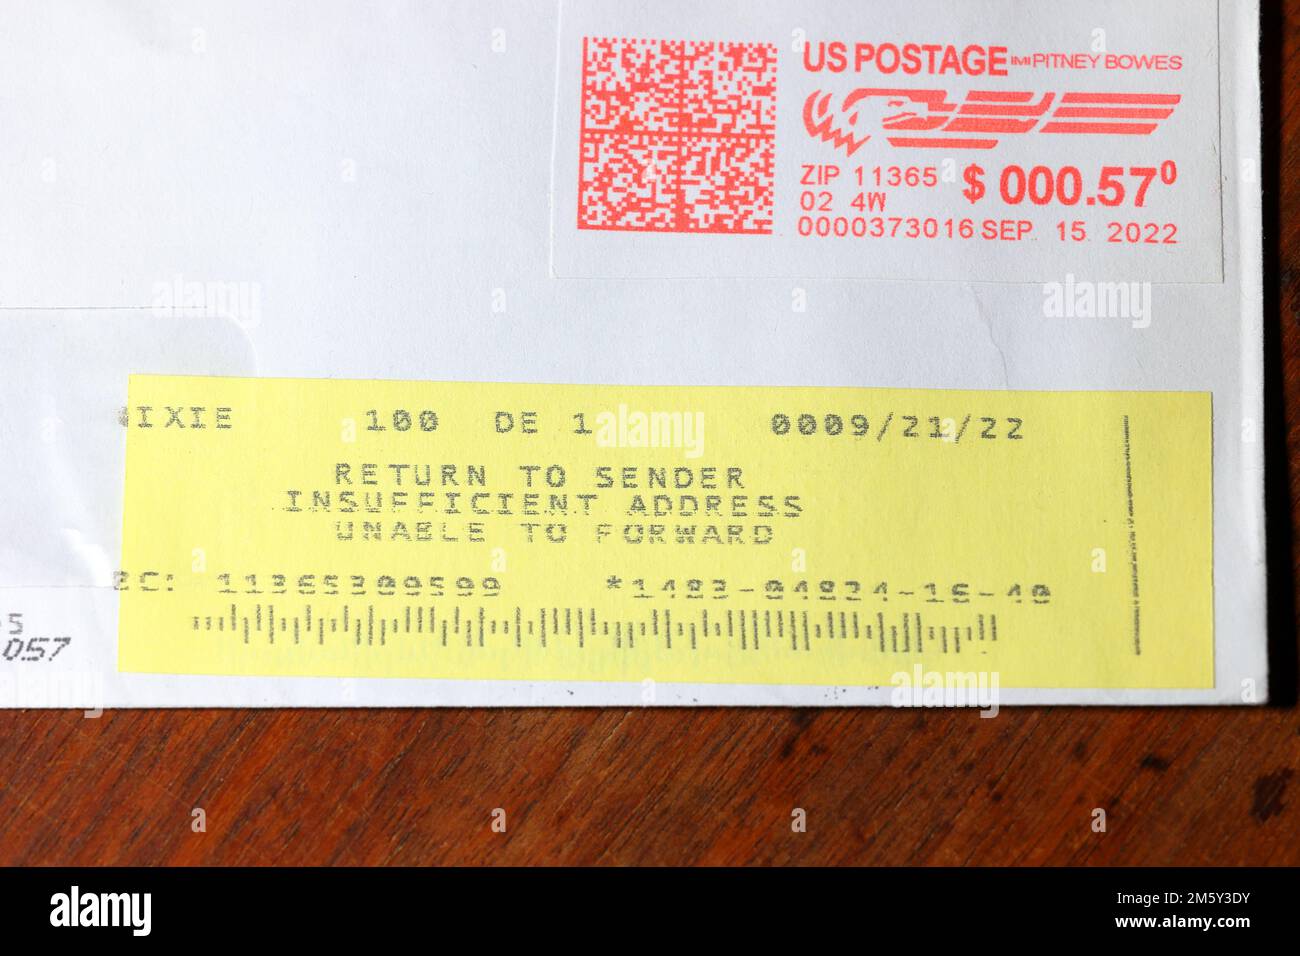 Un retour à l'expéditeur adresse insuffisante Impossible de transmettre l'autocollant sur une lettre envoyée par le service postal des États-Unis. Banque D'Images